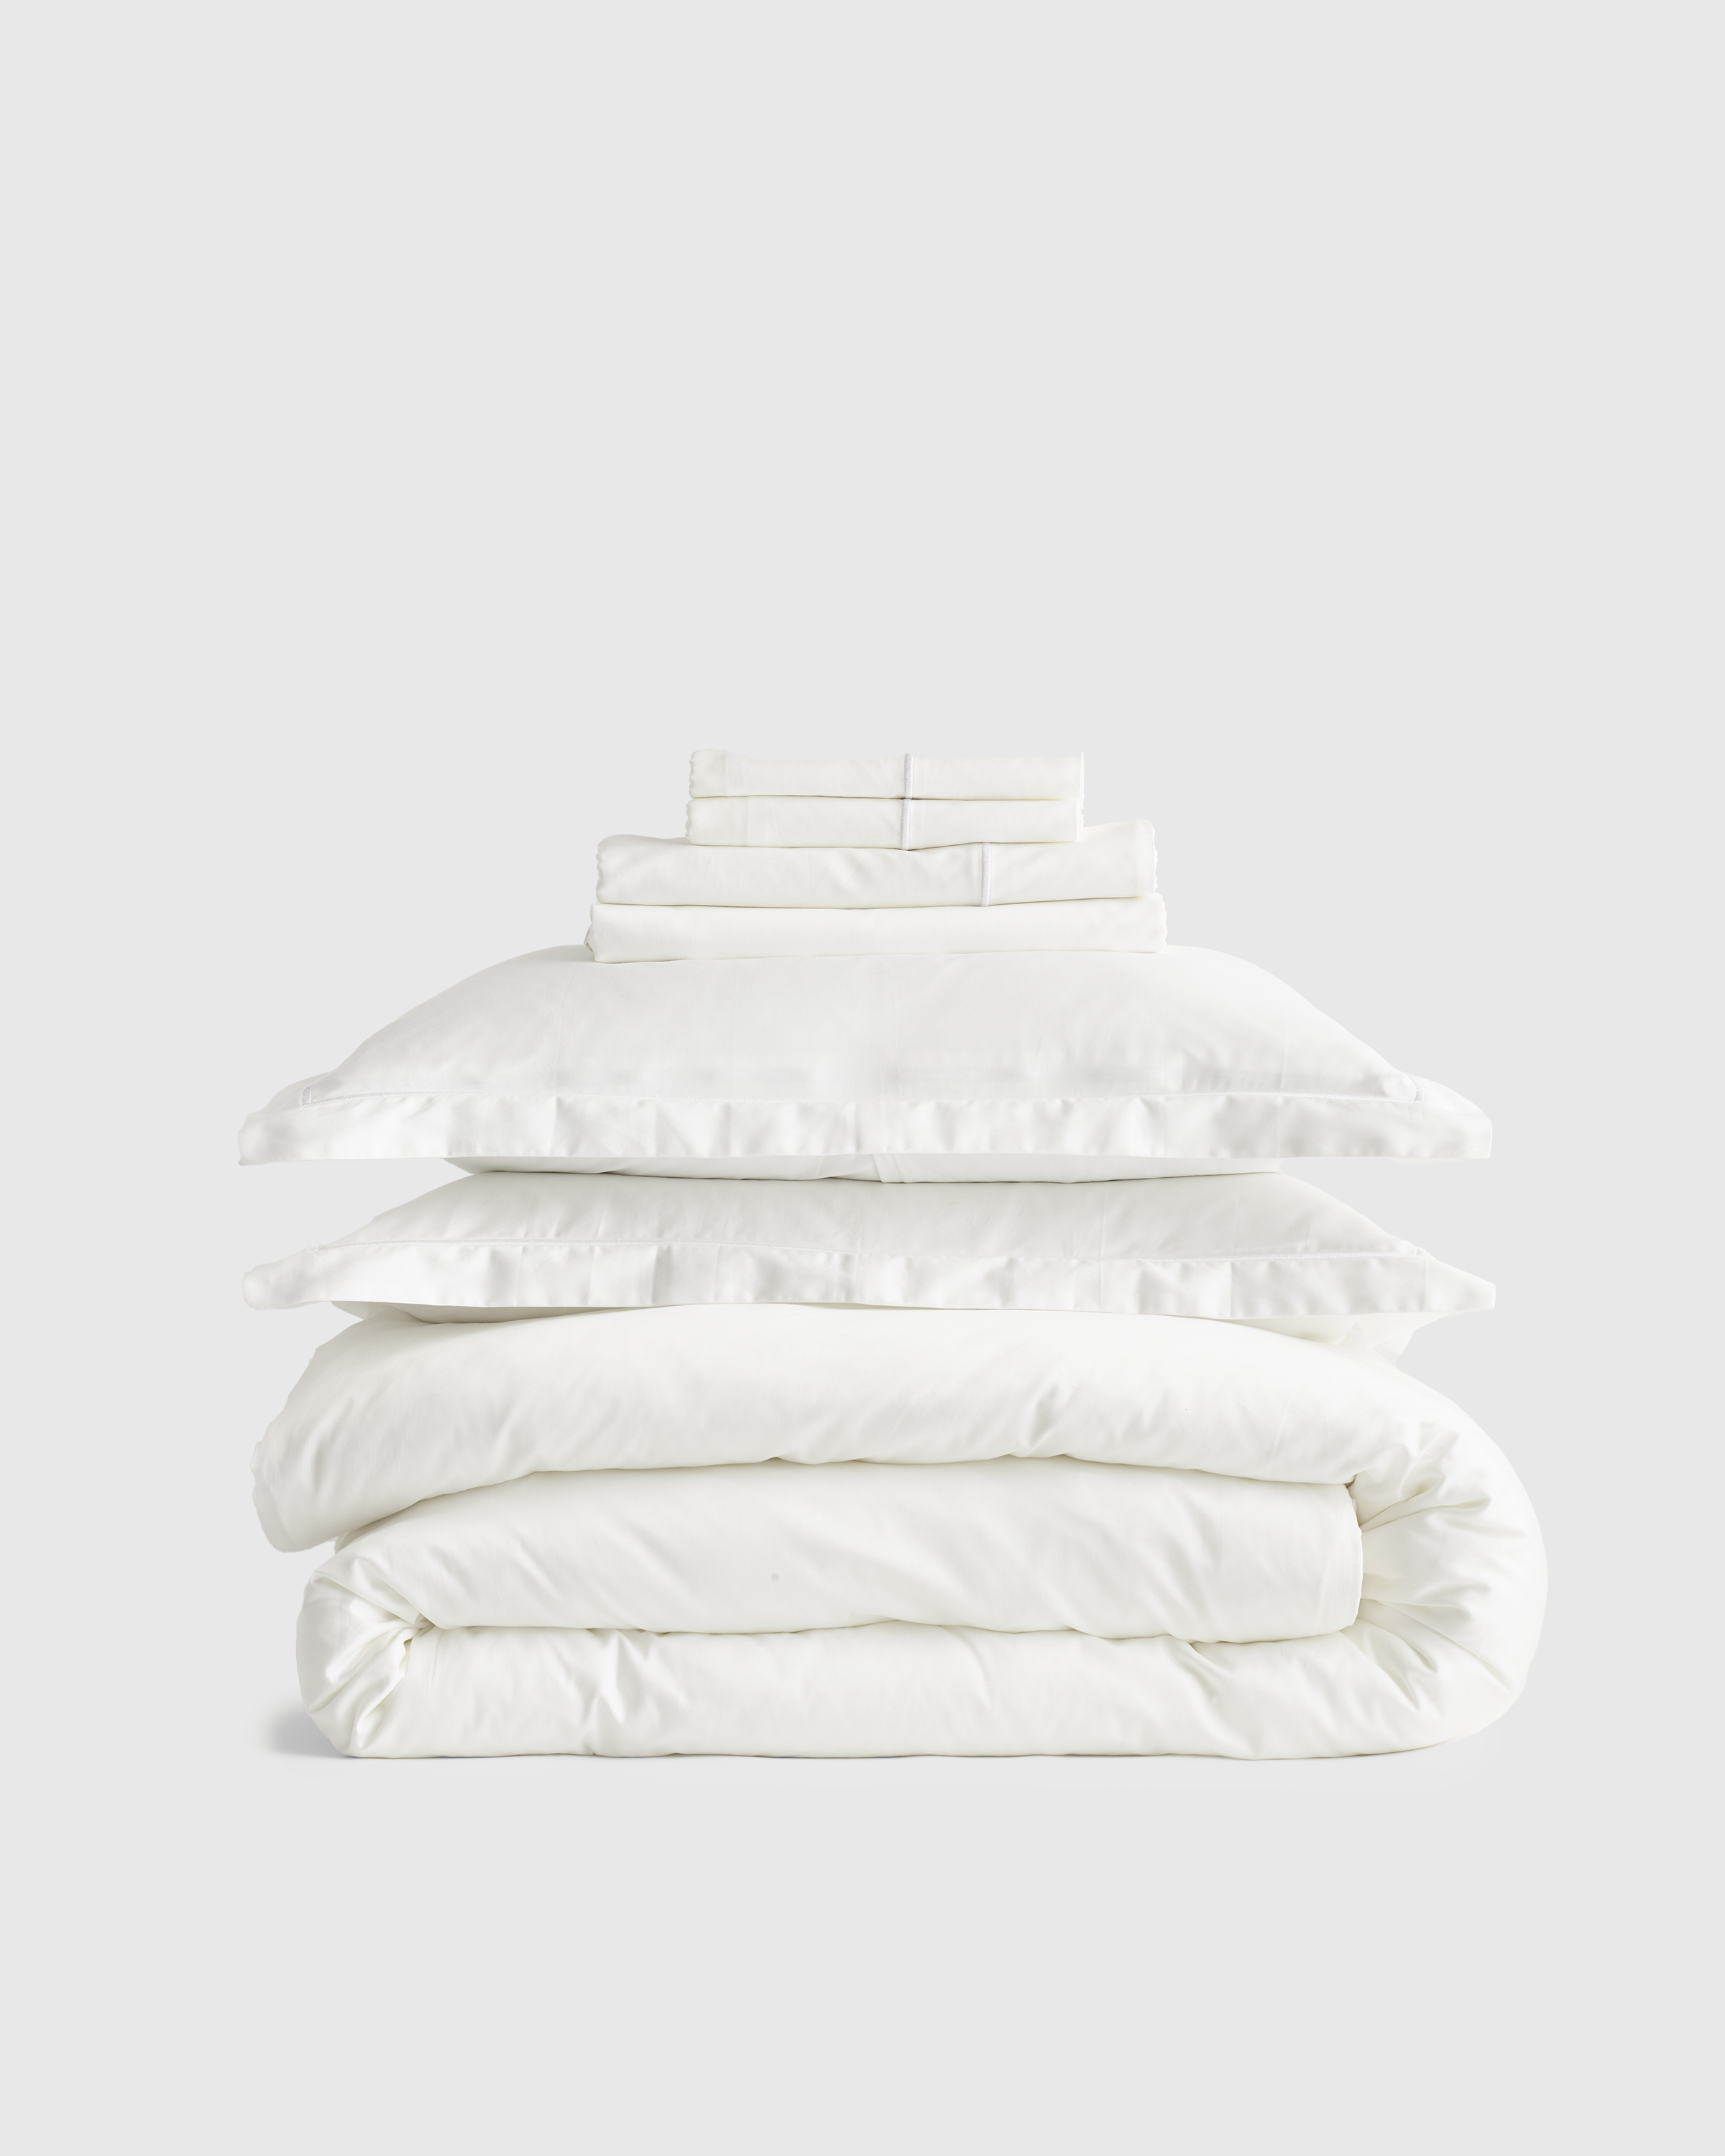  H by Frette Simple Border Standard Bath Bundle - Luxury  All-White Bath Linens Bundle/Includes 2 Hand Towels, 2 Bath Towels, and a  Bath Mat / 100% Cotton : Home & Kitchen